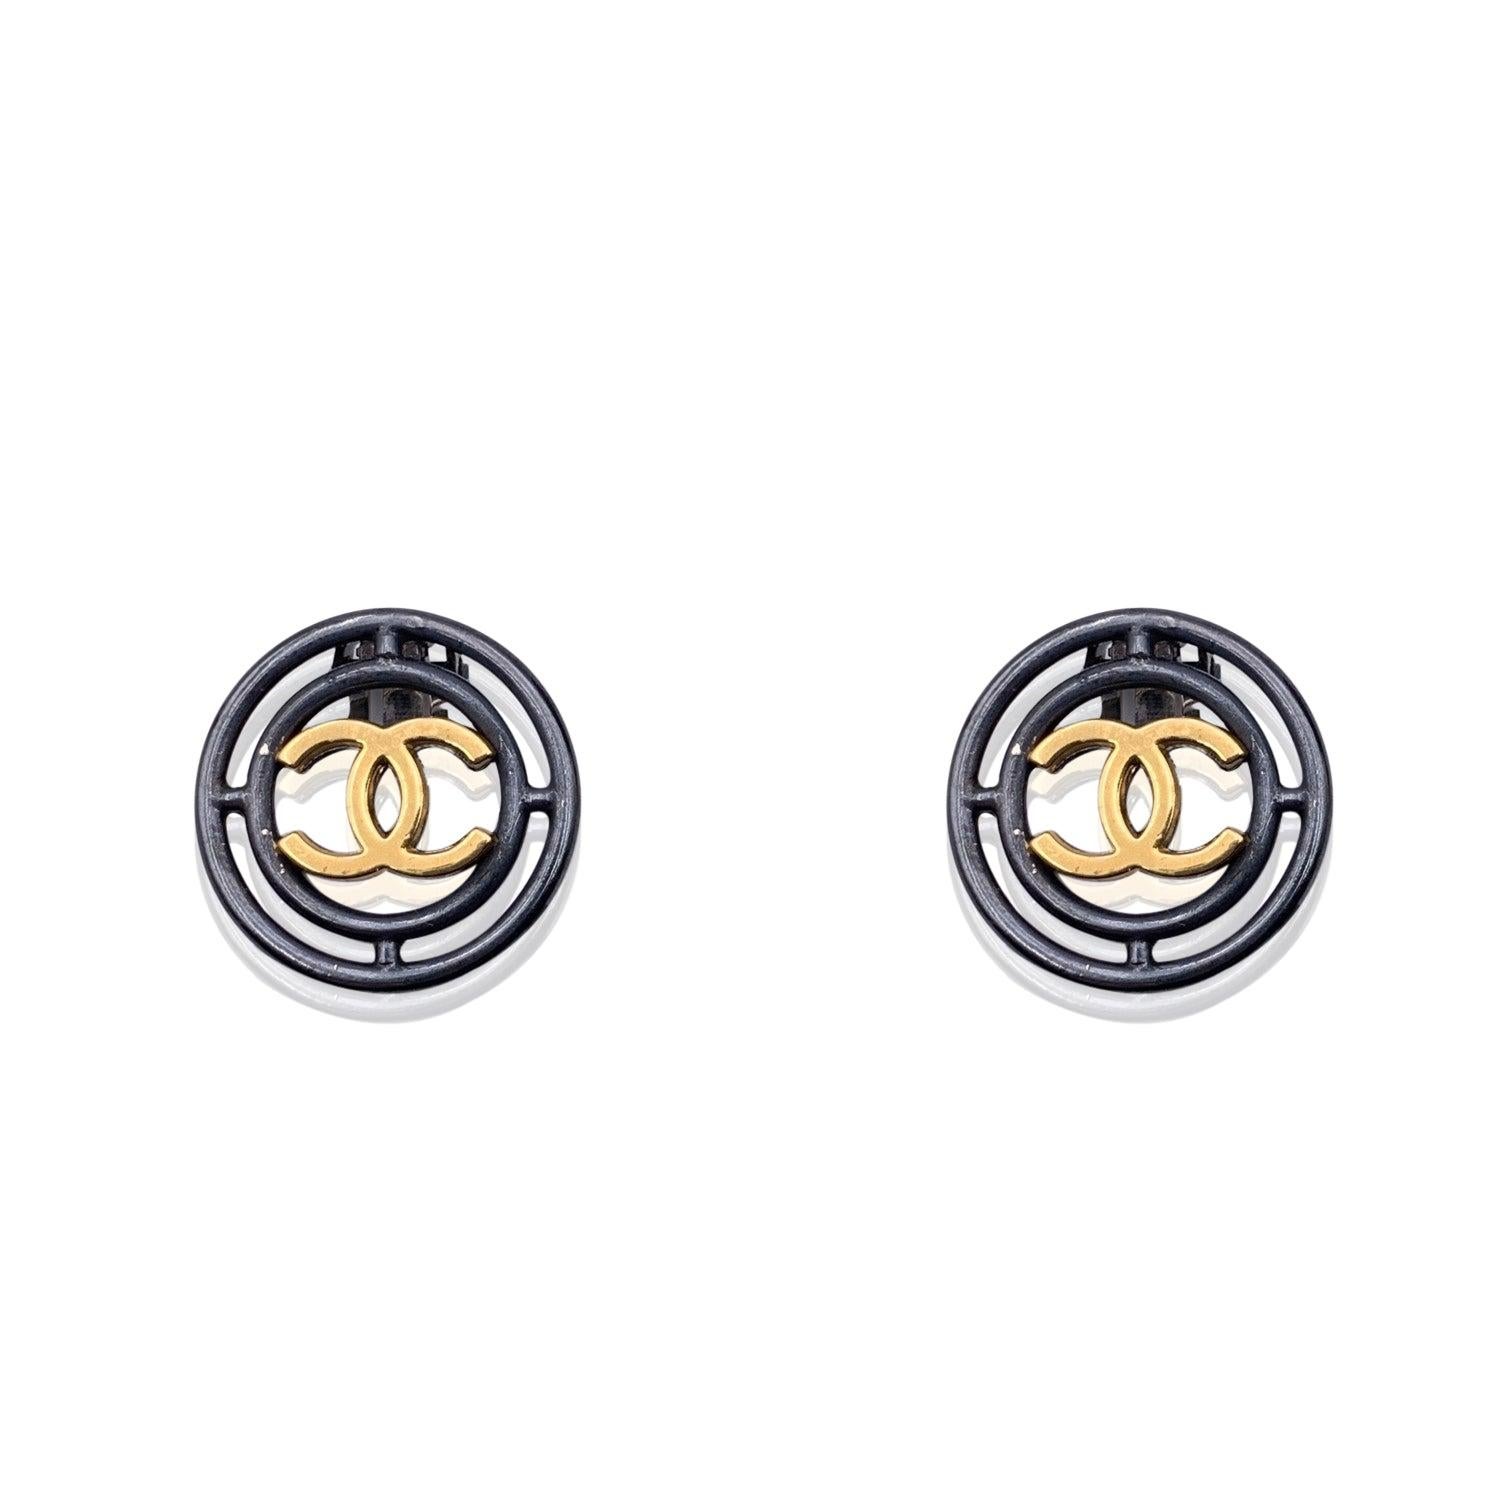 Chanel star earrings gold - Gem